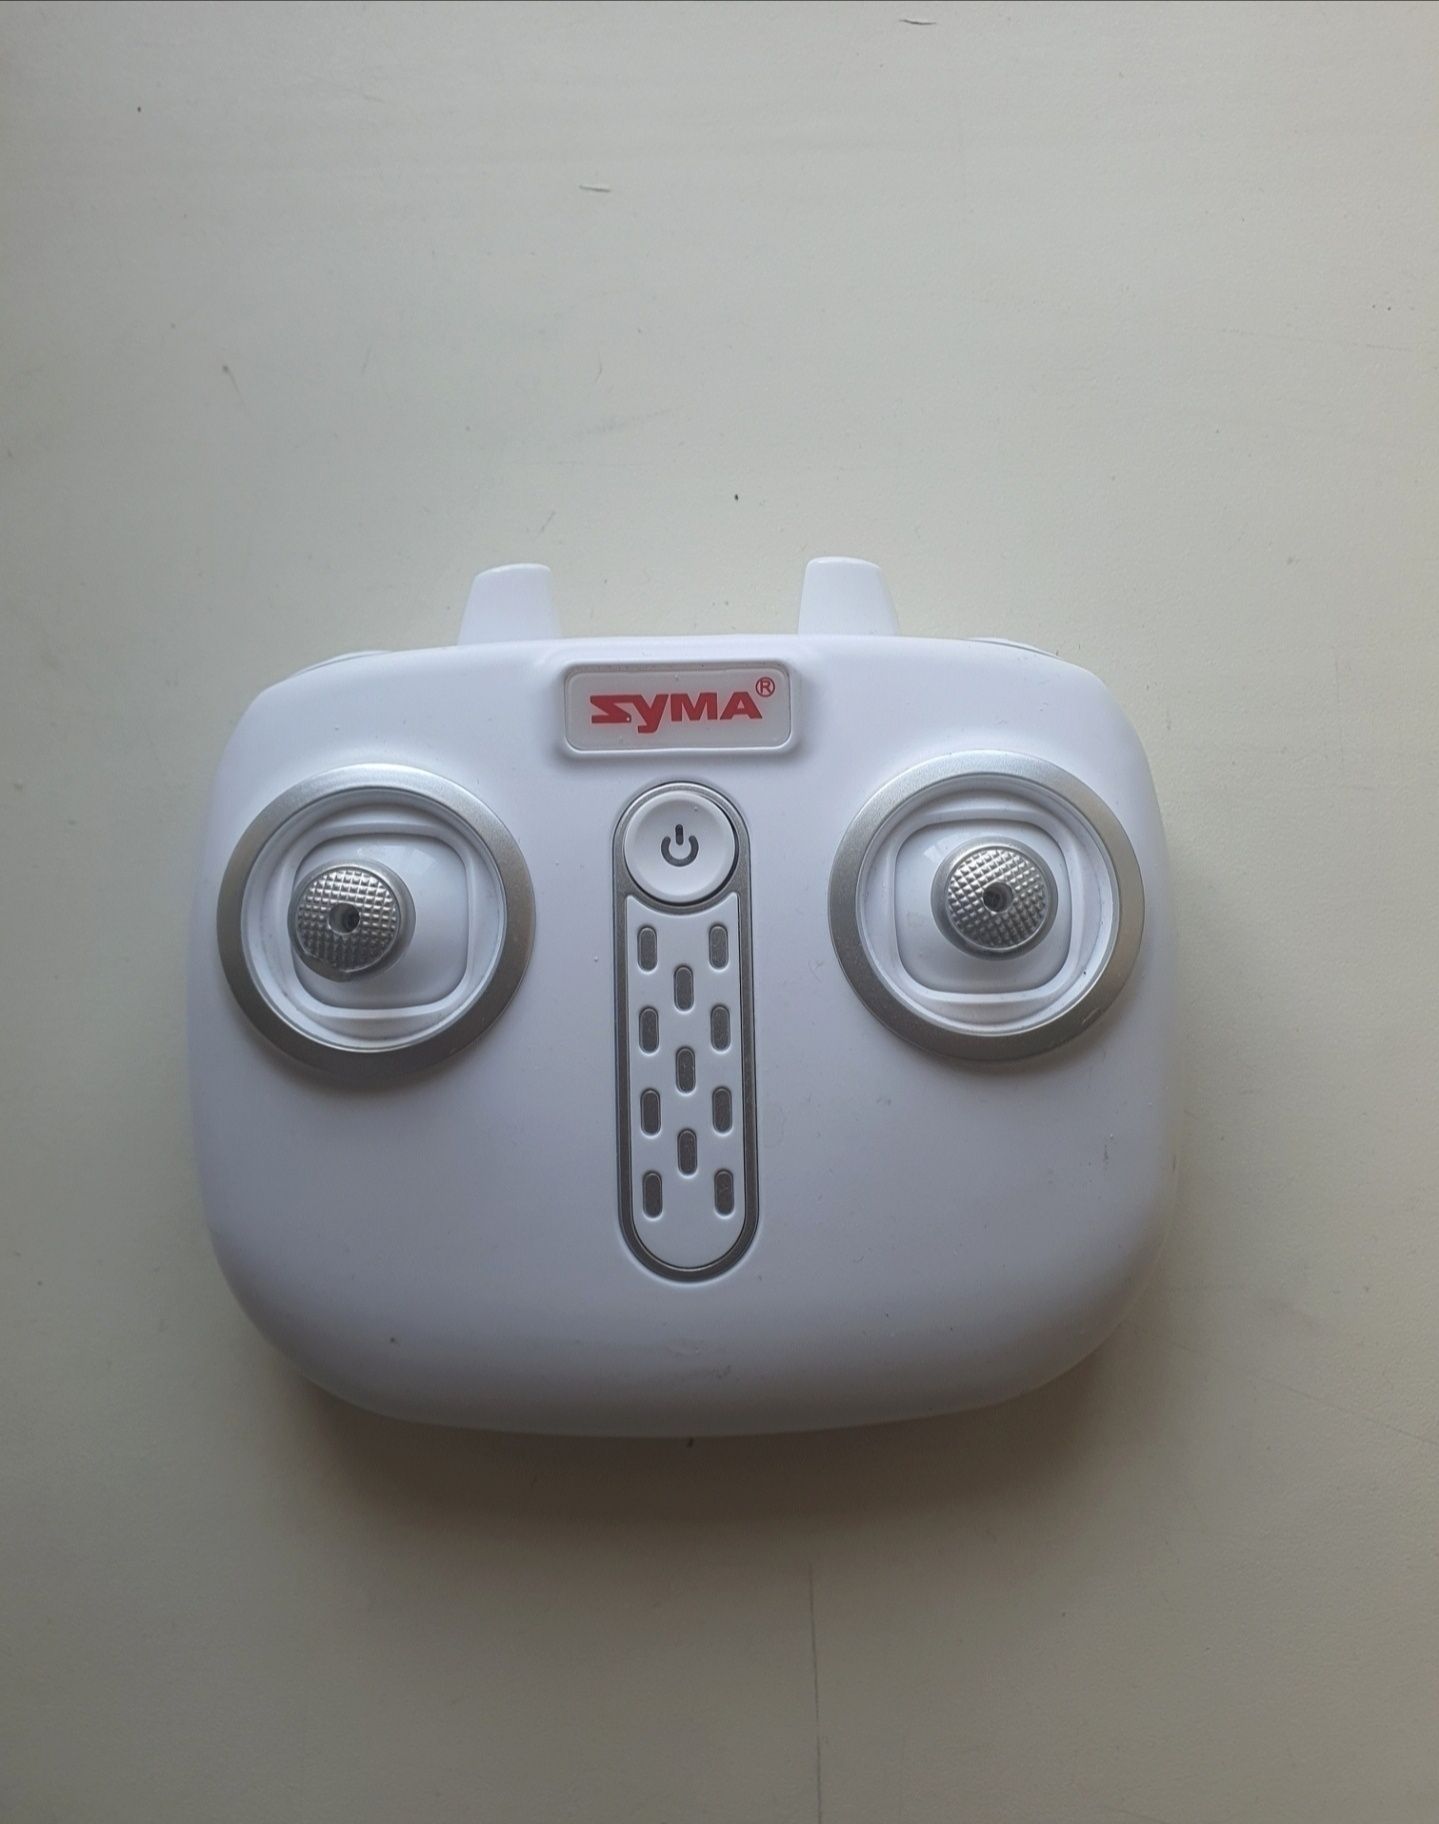 Zyma оригинальный пульт управления для квадрокоптера дрона